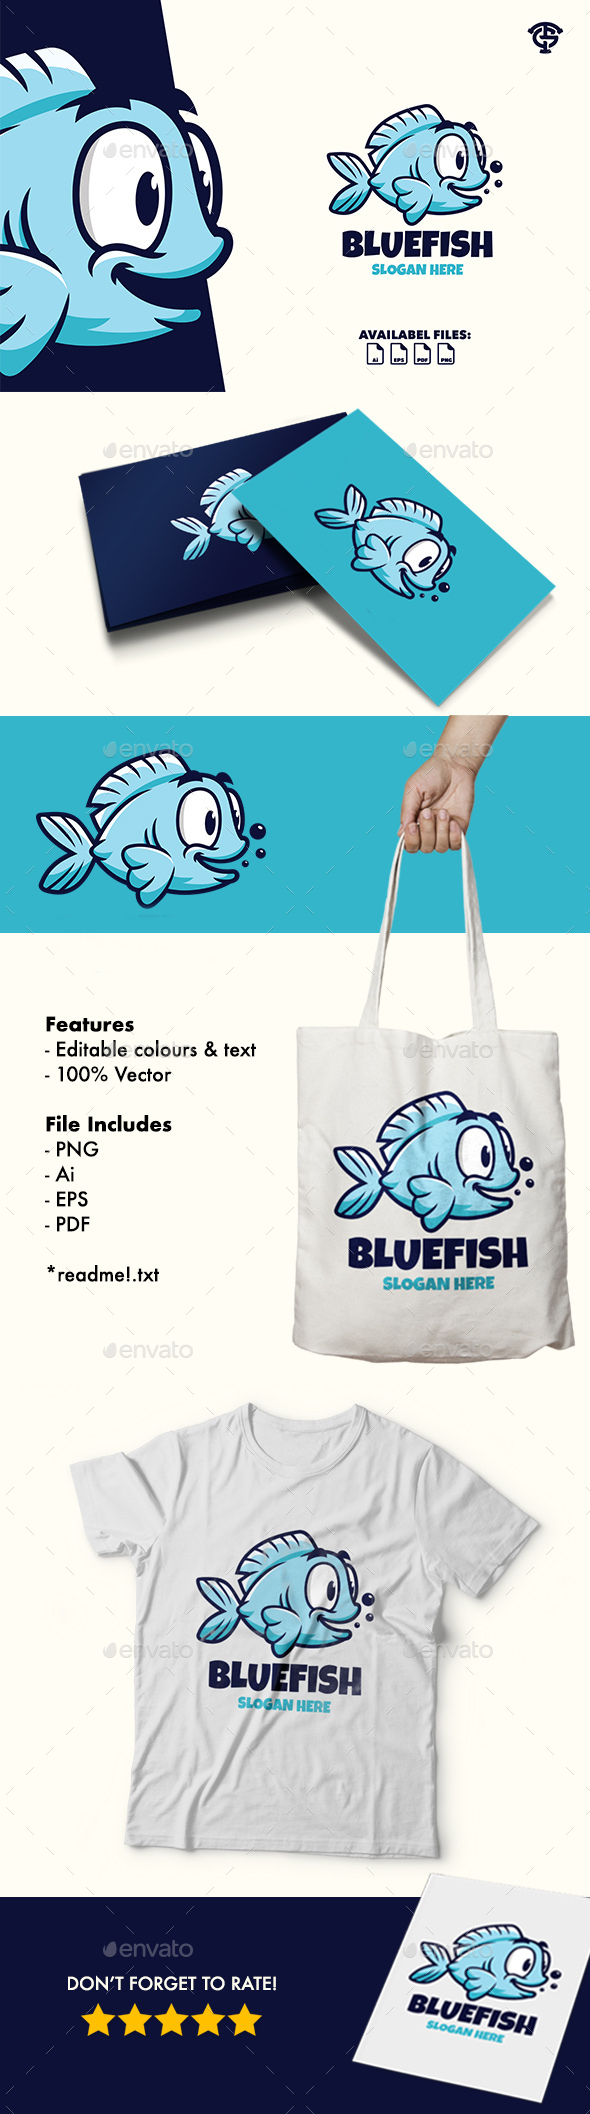 [DOWNLOAD]Bluefish - Logo Mascot